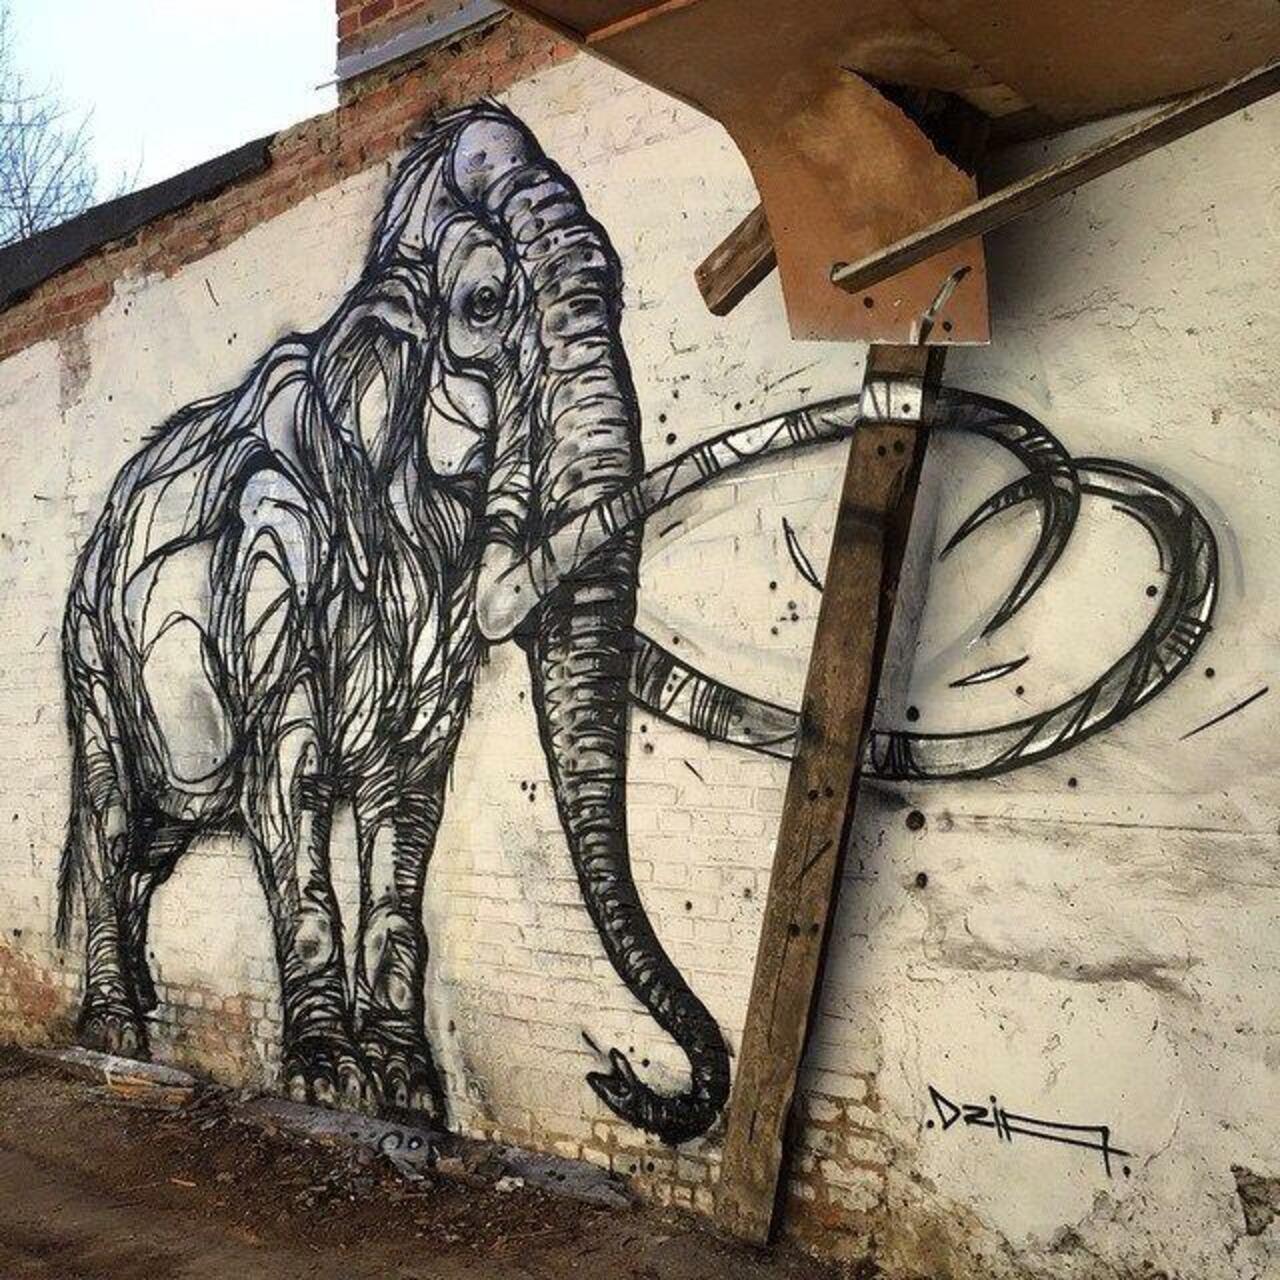 Mammoth. New nature in Street Art wall by DZIA 

#art #graffiti #mural #streetart http://t.co/97onnIw8L0